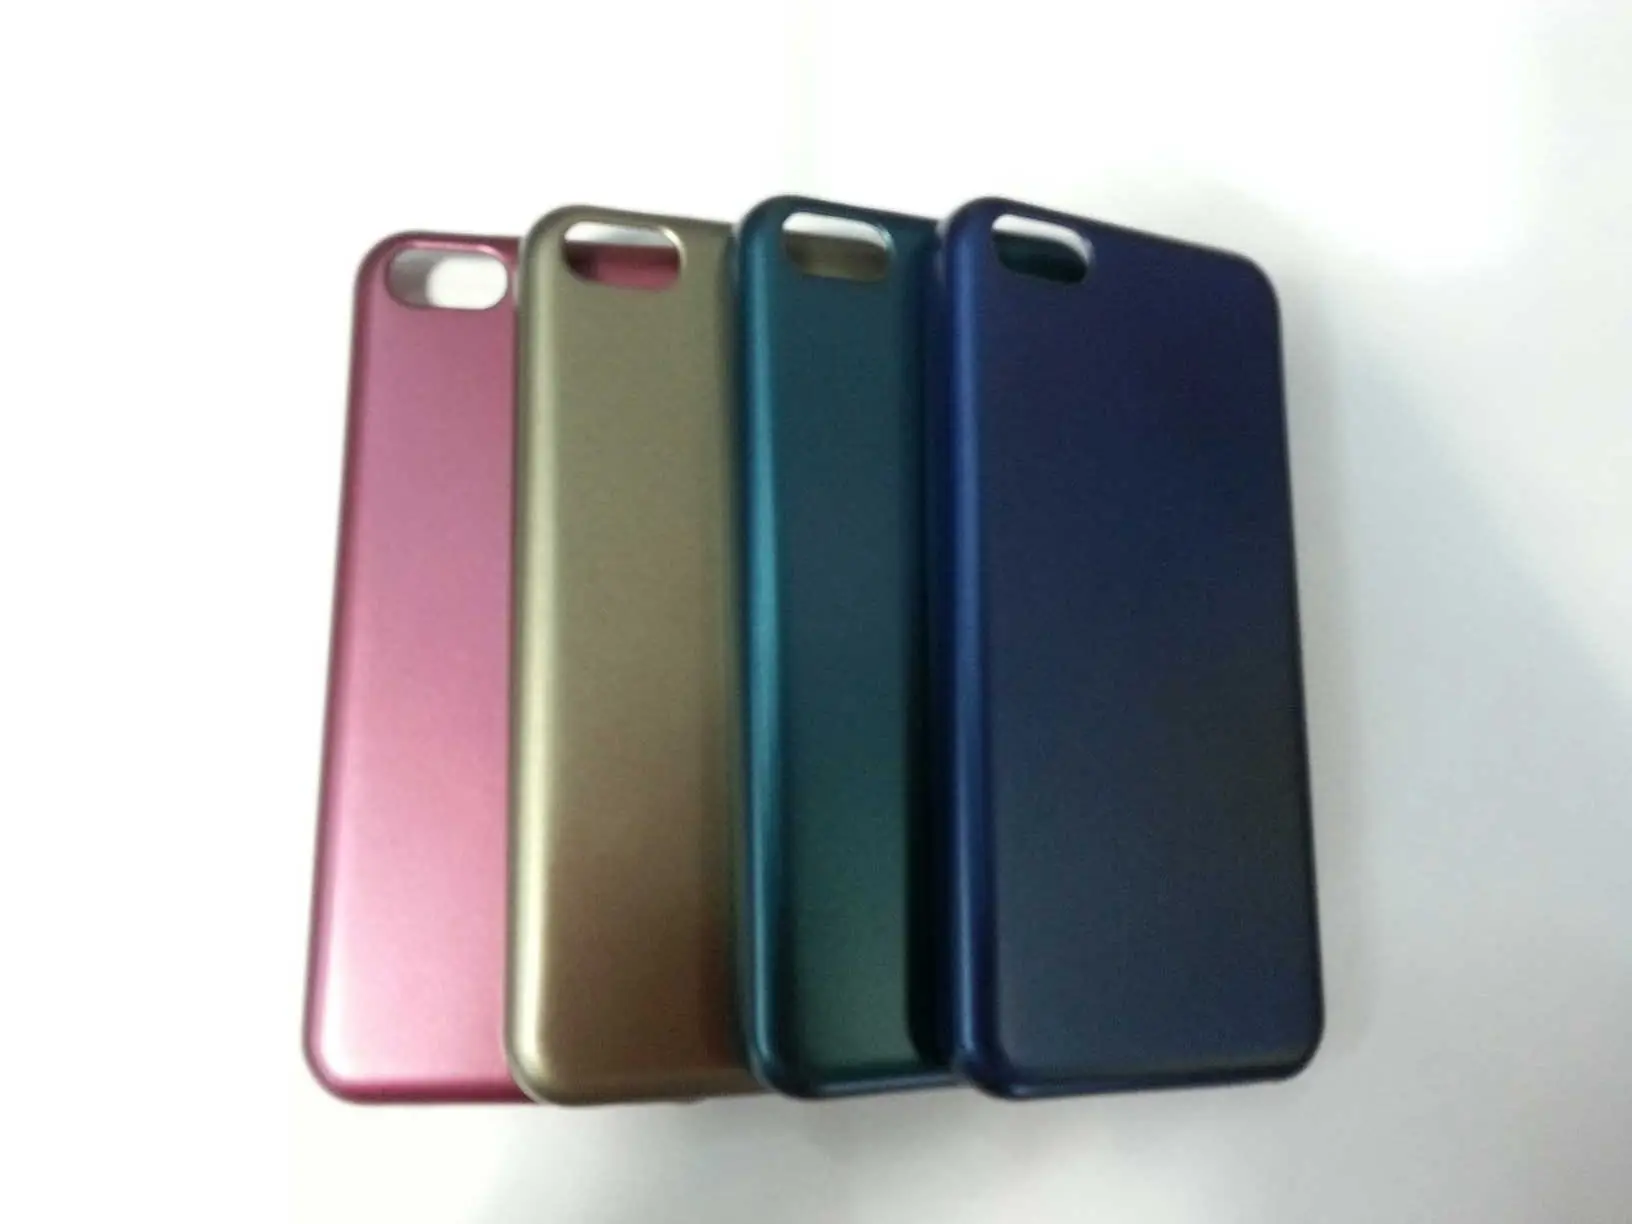 vente en gros de design de mode couleur hard case pour iphone protégées 5c fabricants en provenance de chine